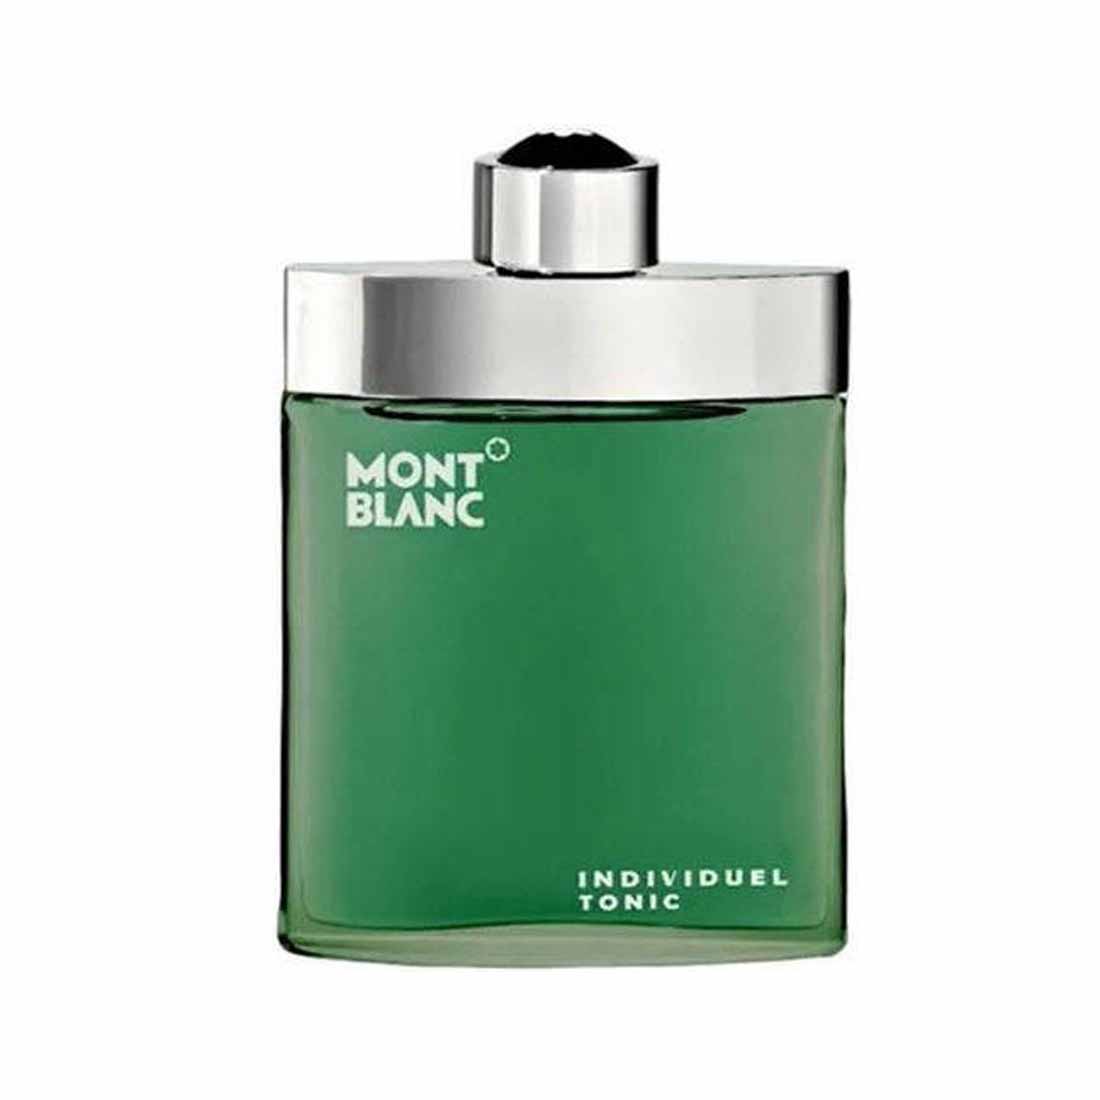 Mont Blanc Individuel Tonic Eau de Toilette For Men - 75ml